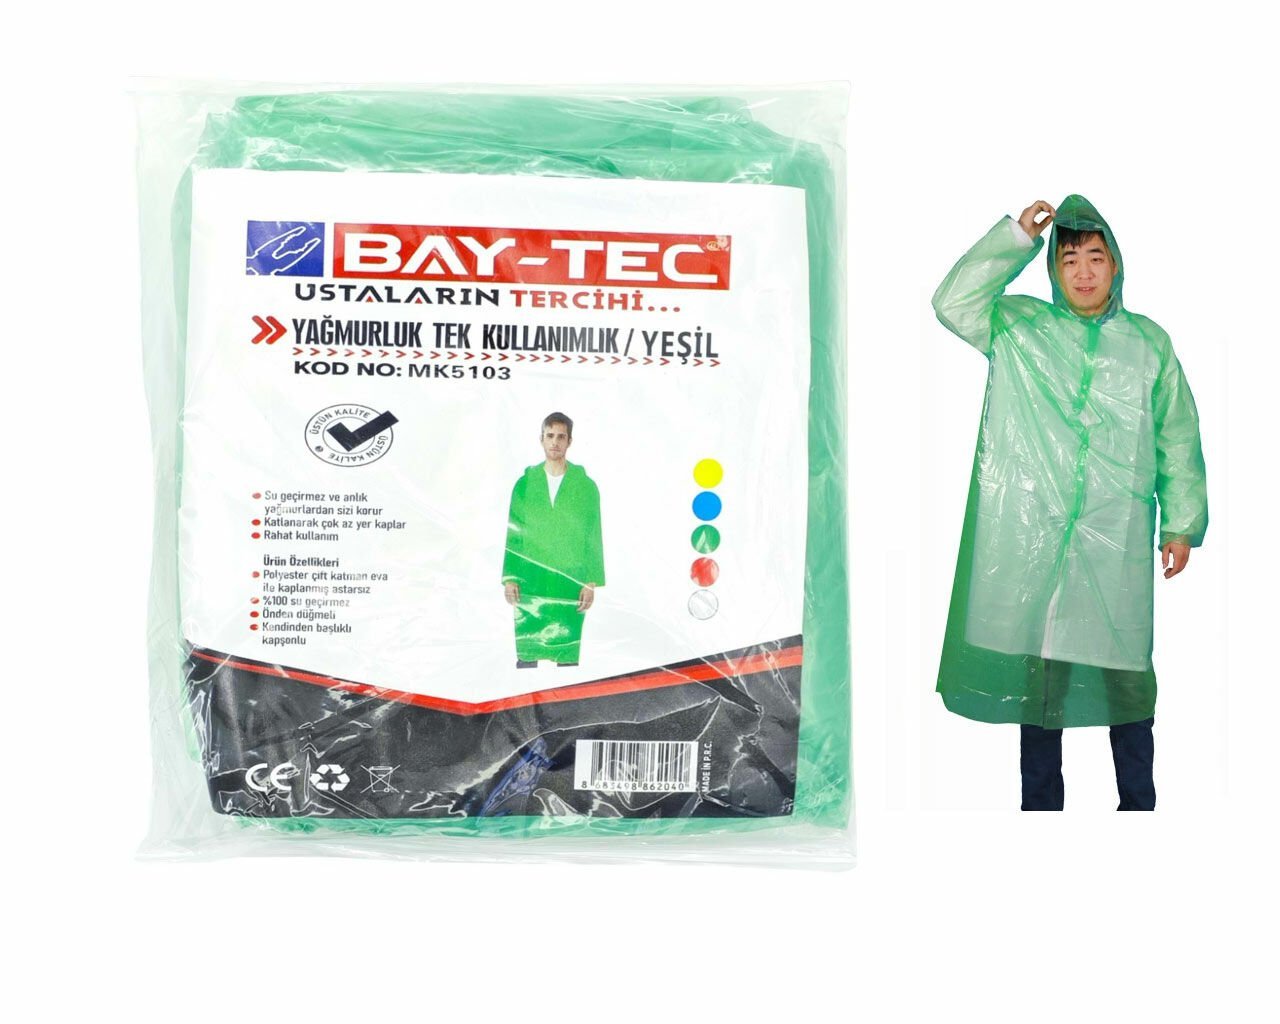 BAY-TEC MK5103 Yağmurluk Tek Kullanımlık Yeşil